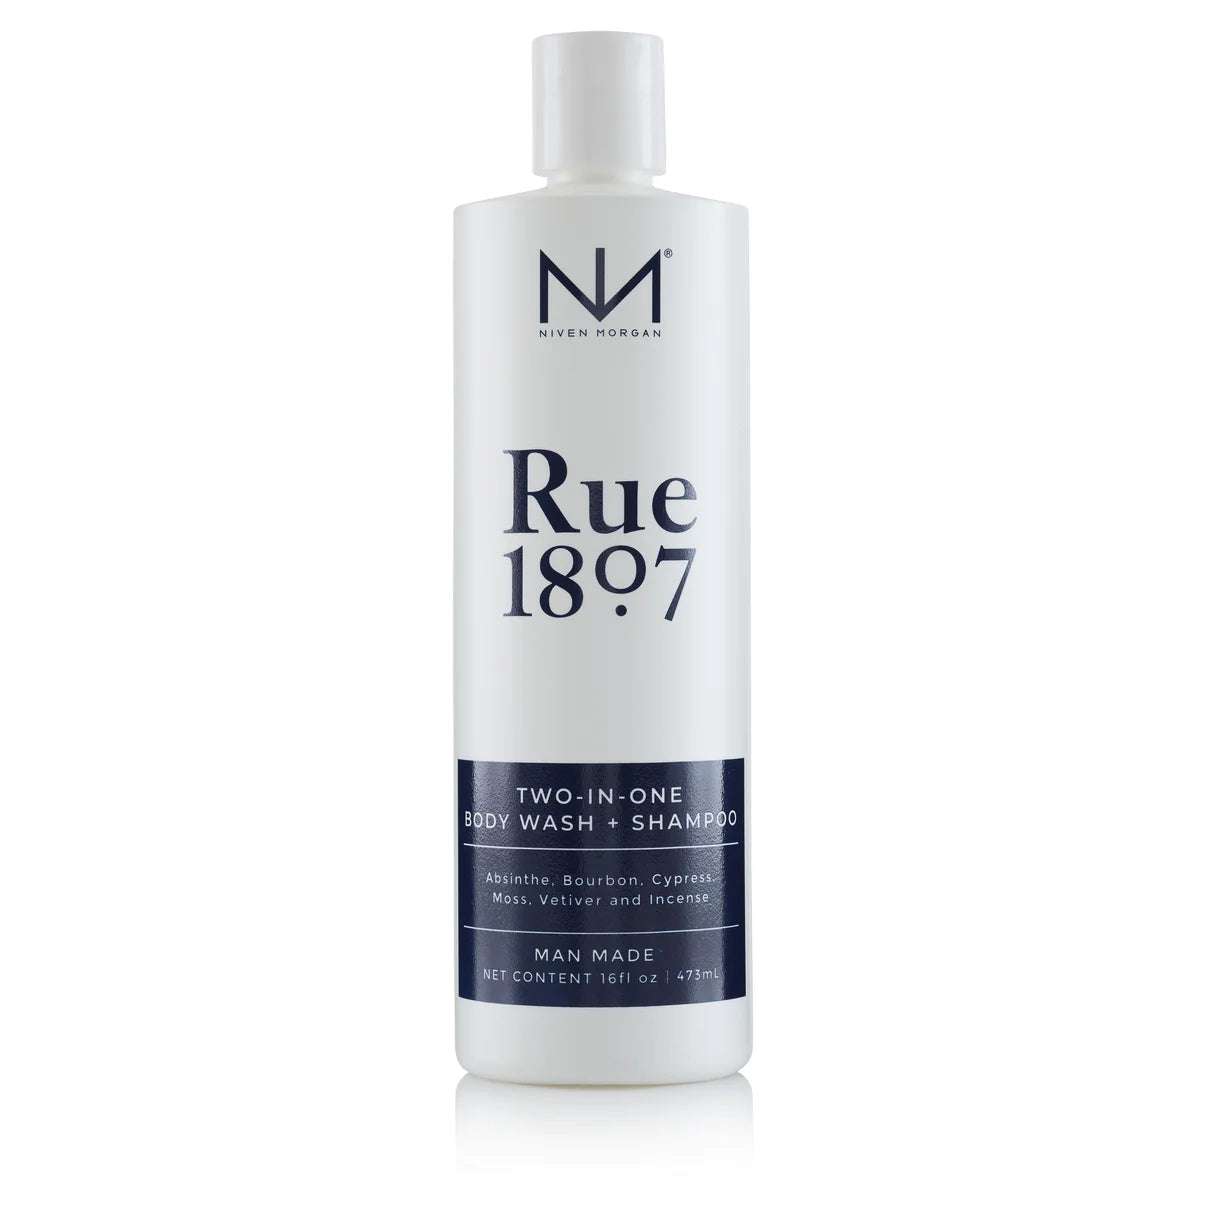 Rue 1807 Body Wash/Shampoo